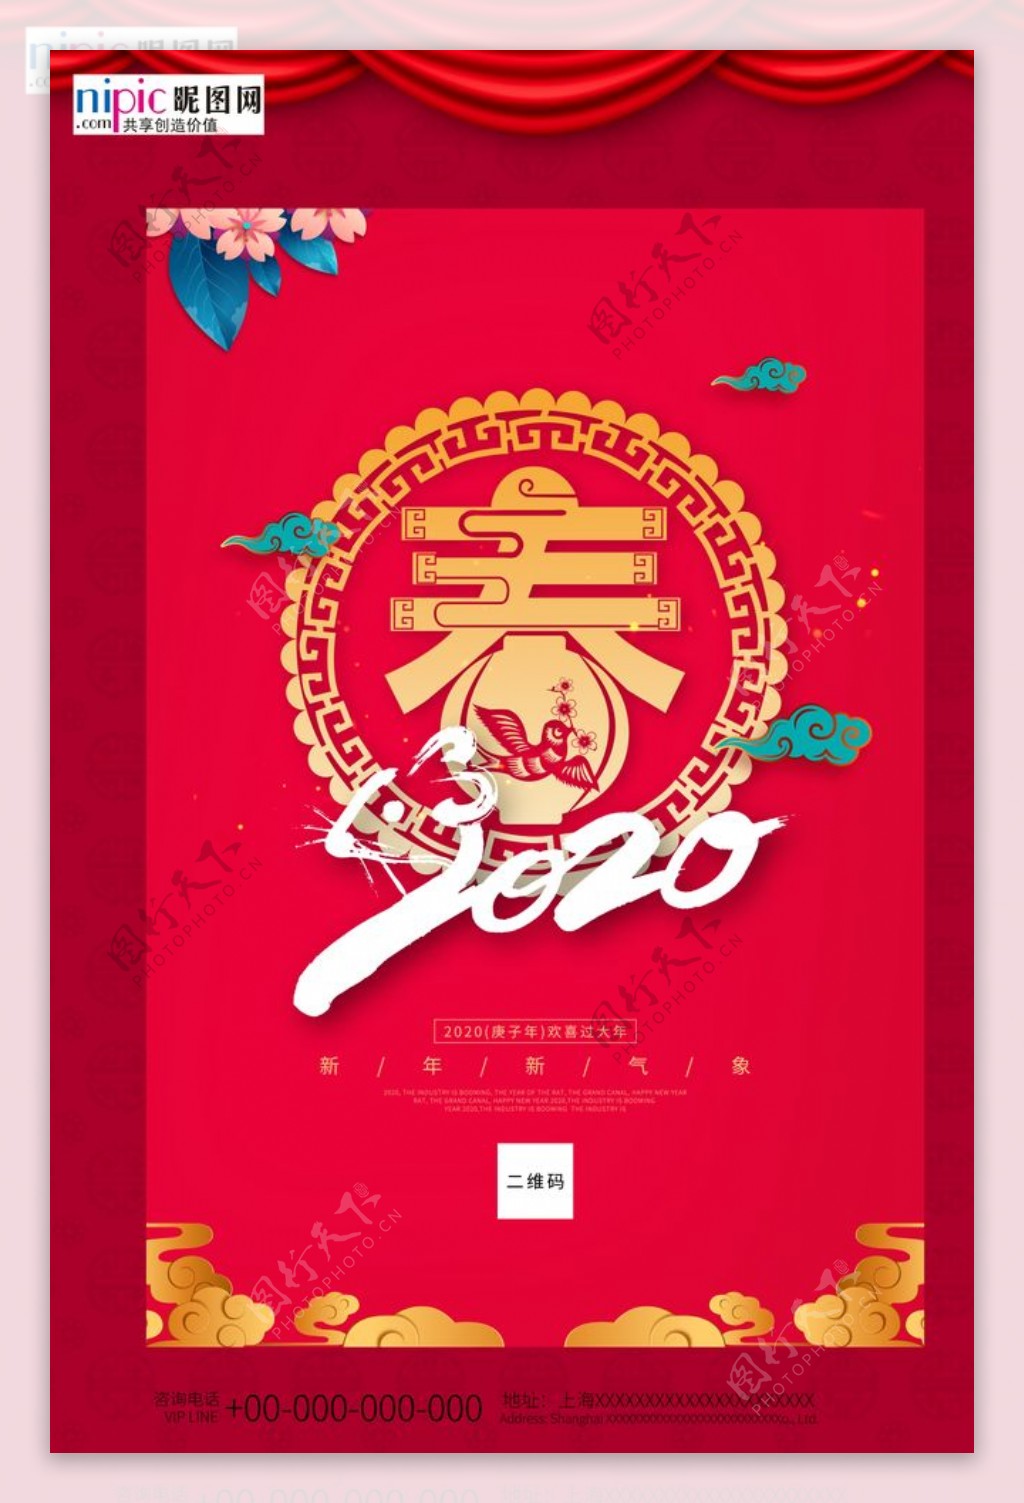 鼠年新春大吉春节宣传红色海报